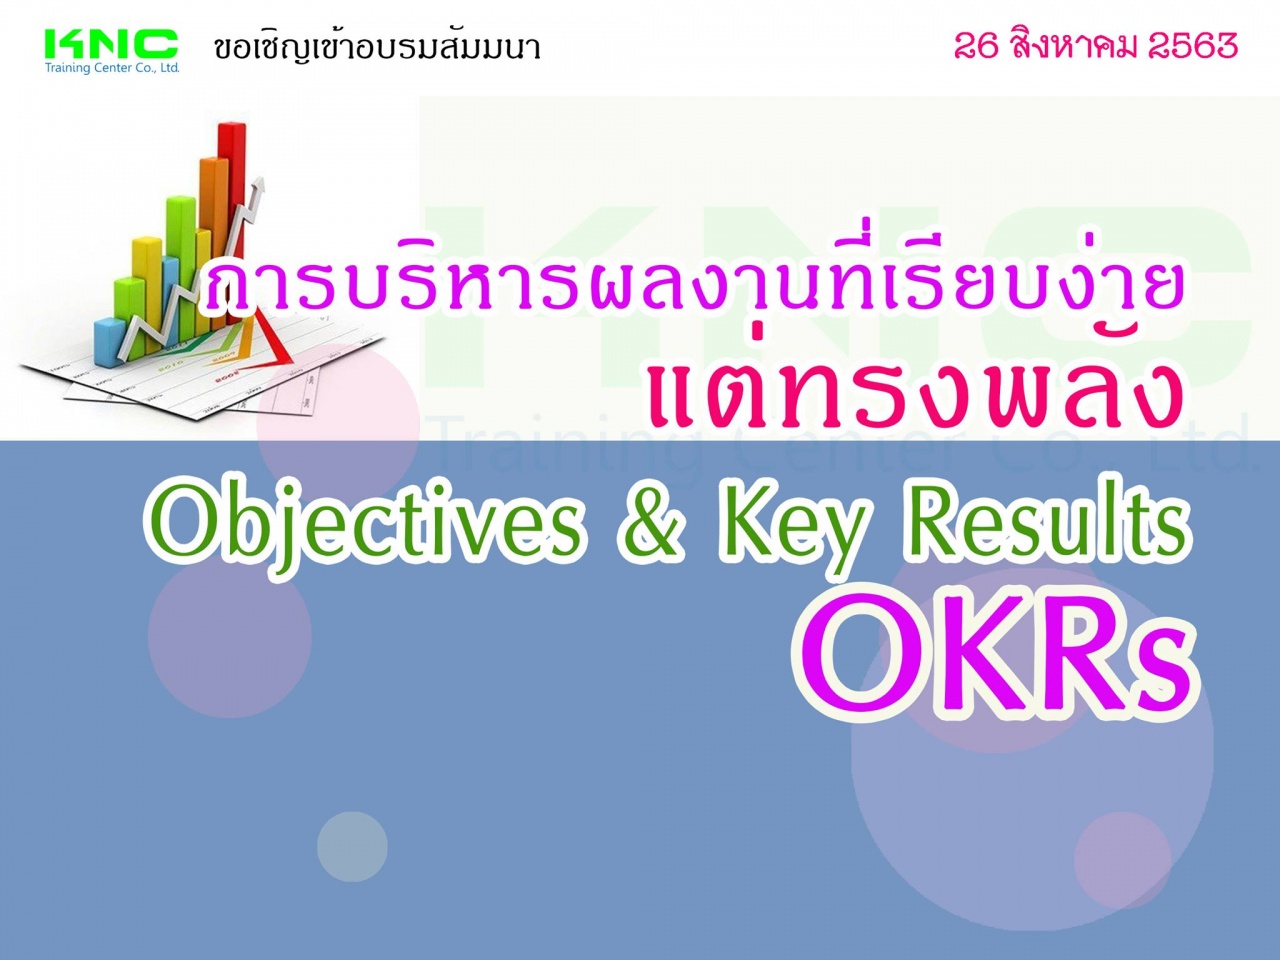 การบริหารผลงานที่เรียบง่ายแต่ทรงพลัง OKRs : Objectives & Key Results